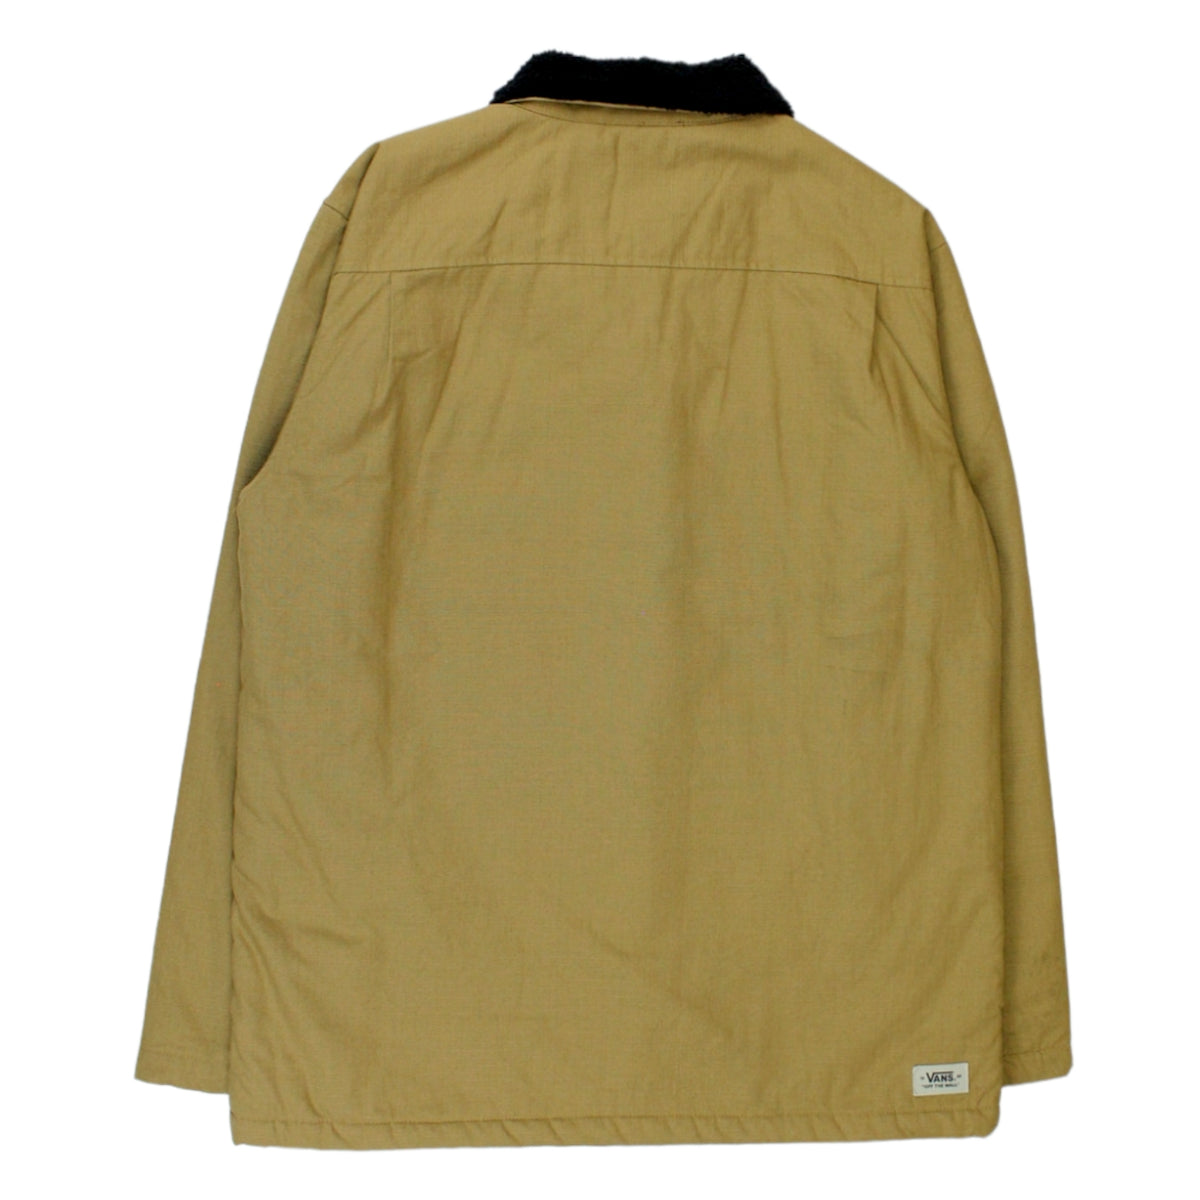 Vans Brown Fleece Lined Jacket